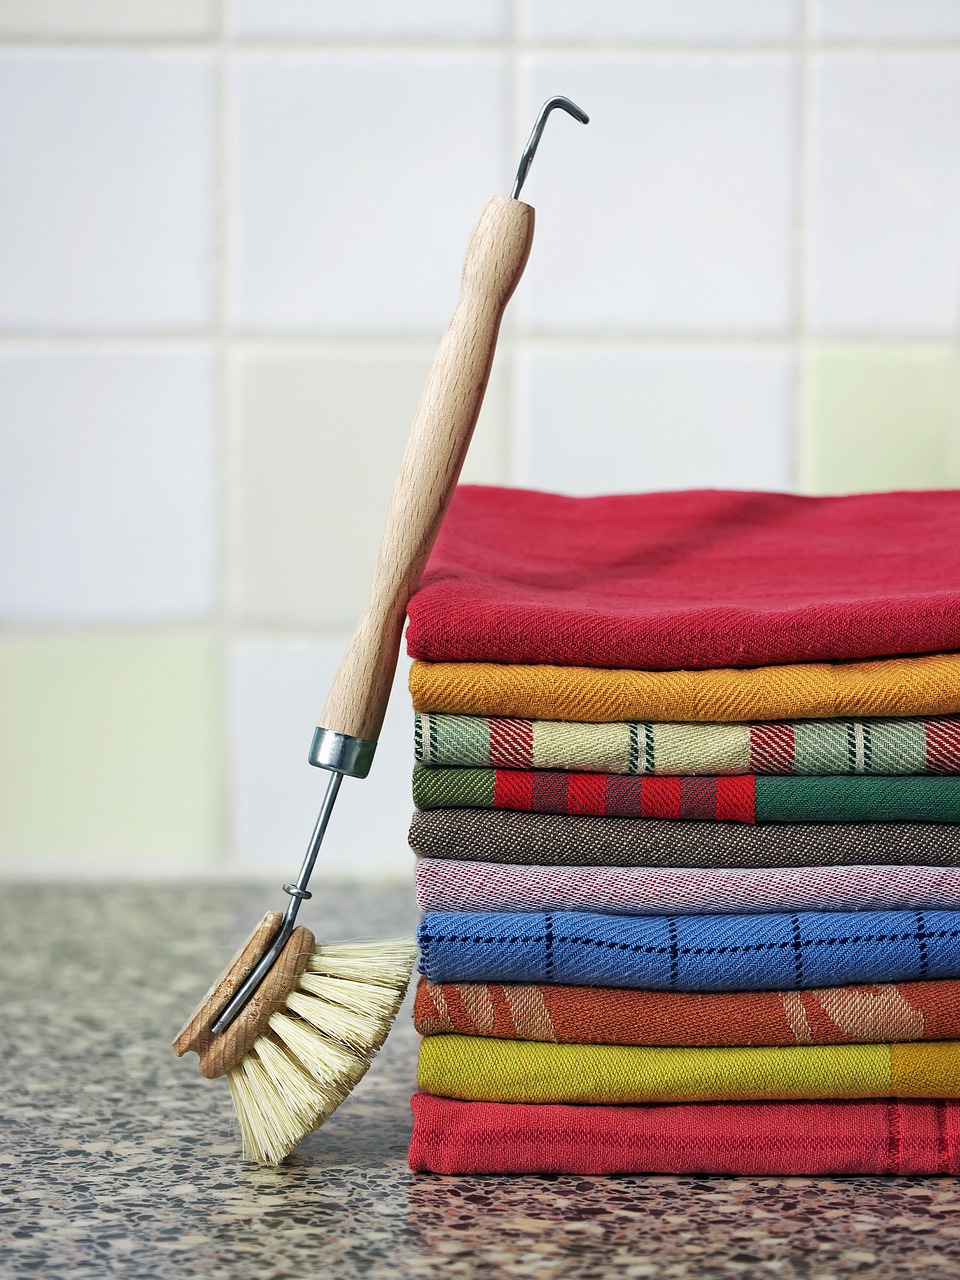 starostlivosť o domácnosť a čisté kuchynské utierky